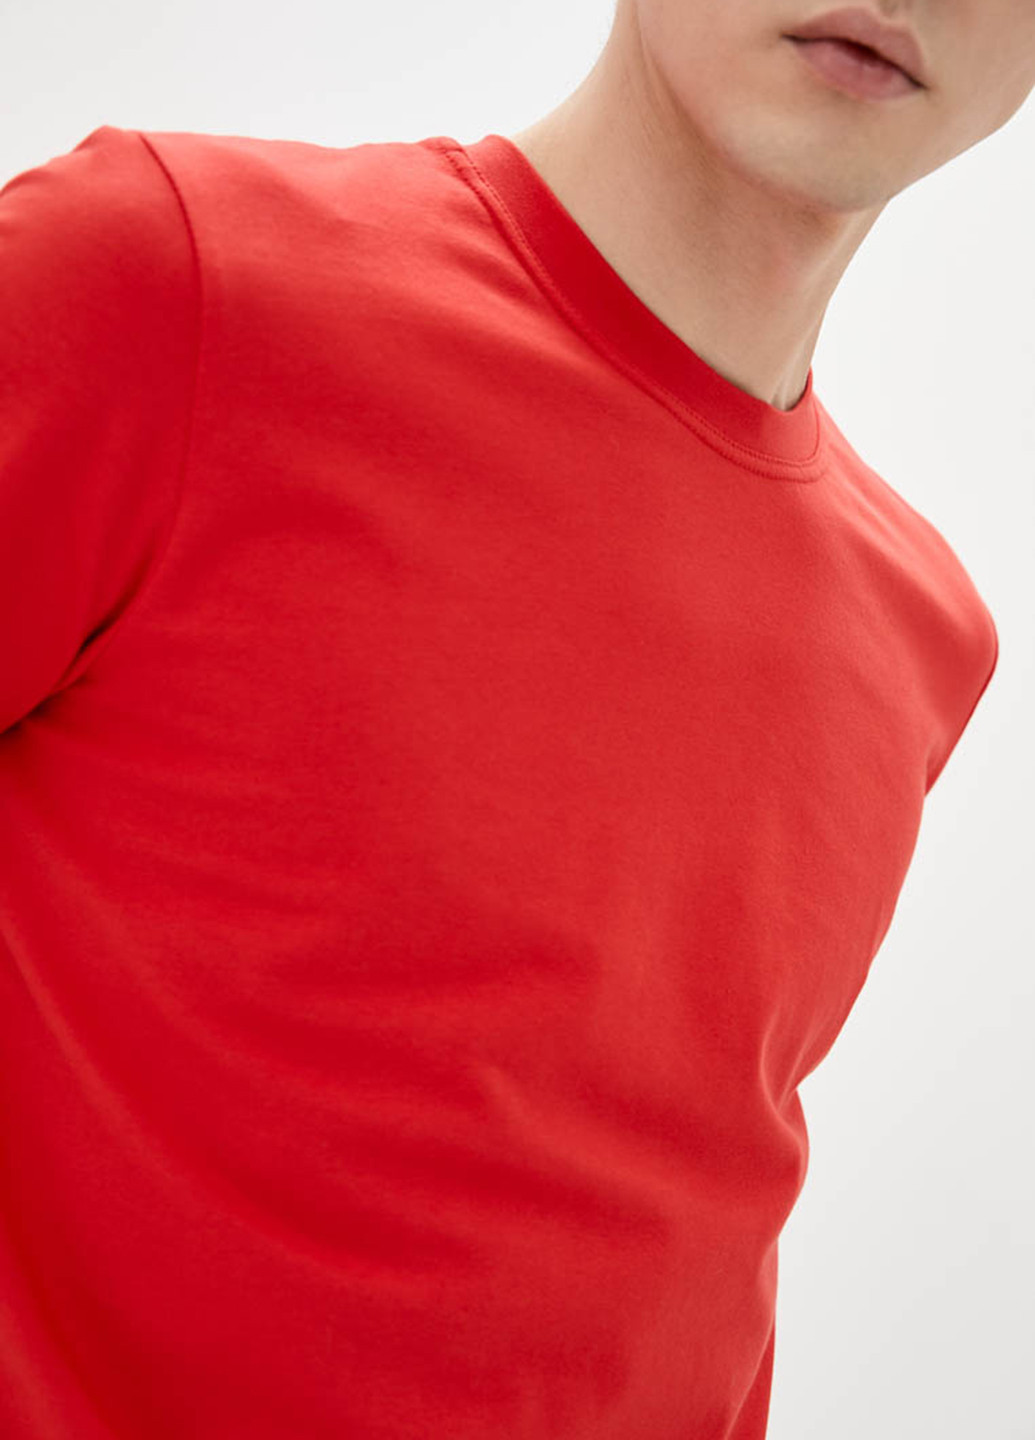 Красная футболка Promin.